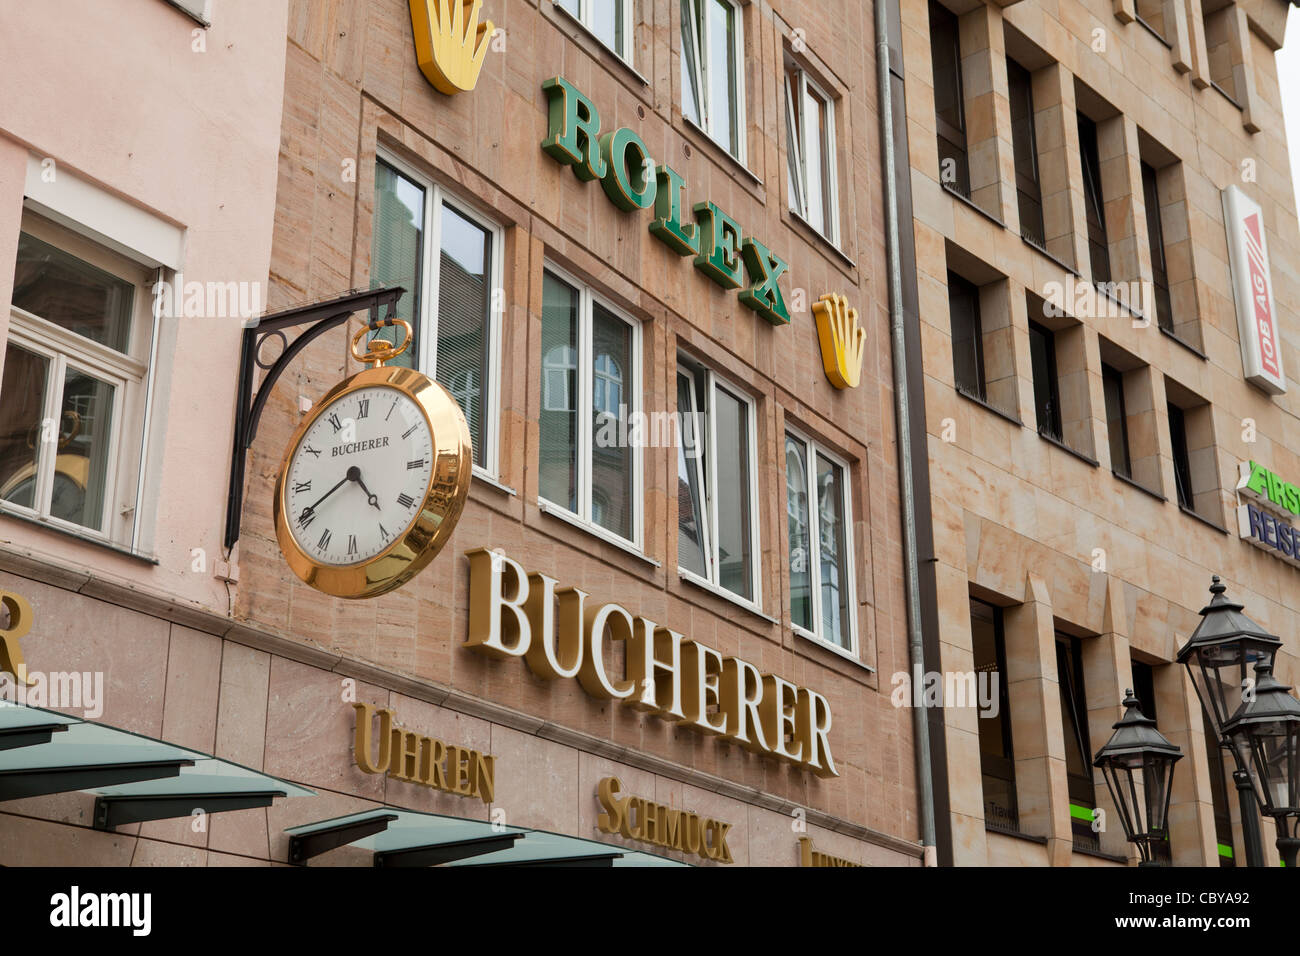 Bucherer Schmuck und Uhren Shop: Rolex Fachhändler im Zentrum von Nürnberg  Stockfotografie - Alamy